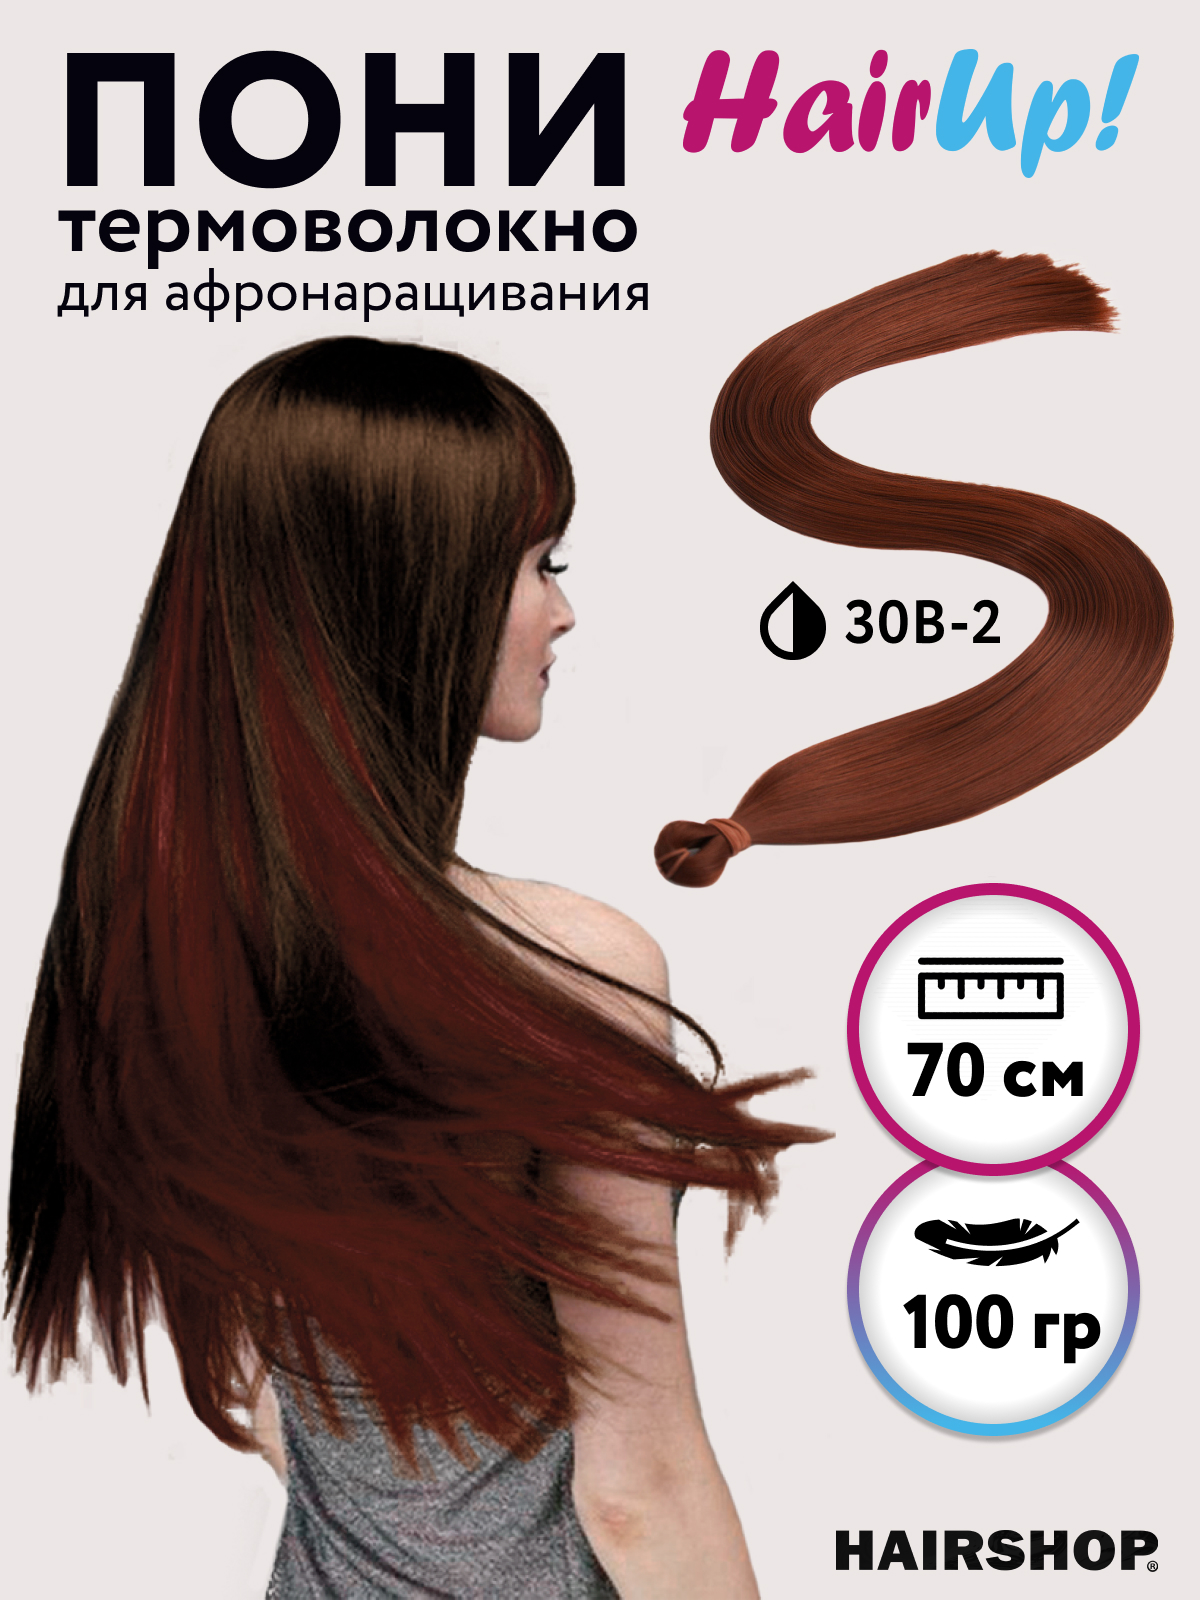 Канекалон Hairshop Пони HairUp для точечного афронаращивания прямые 30B-2 1,4м 100г канекалон hairshop пони hairup для точечного афронаращивания с21 сине голубой 1 4м